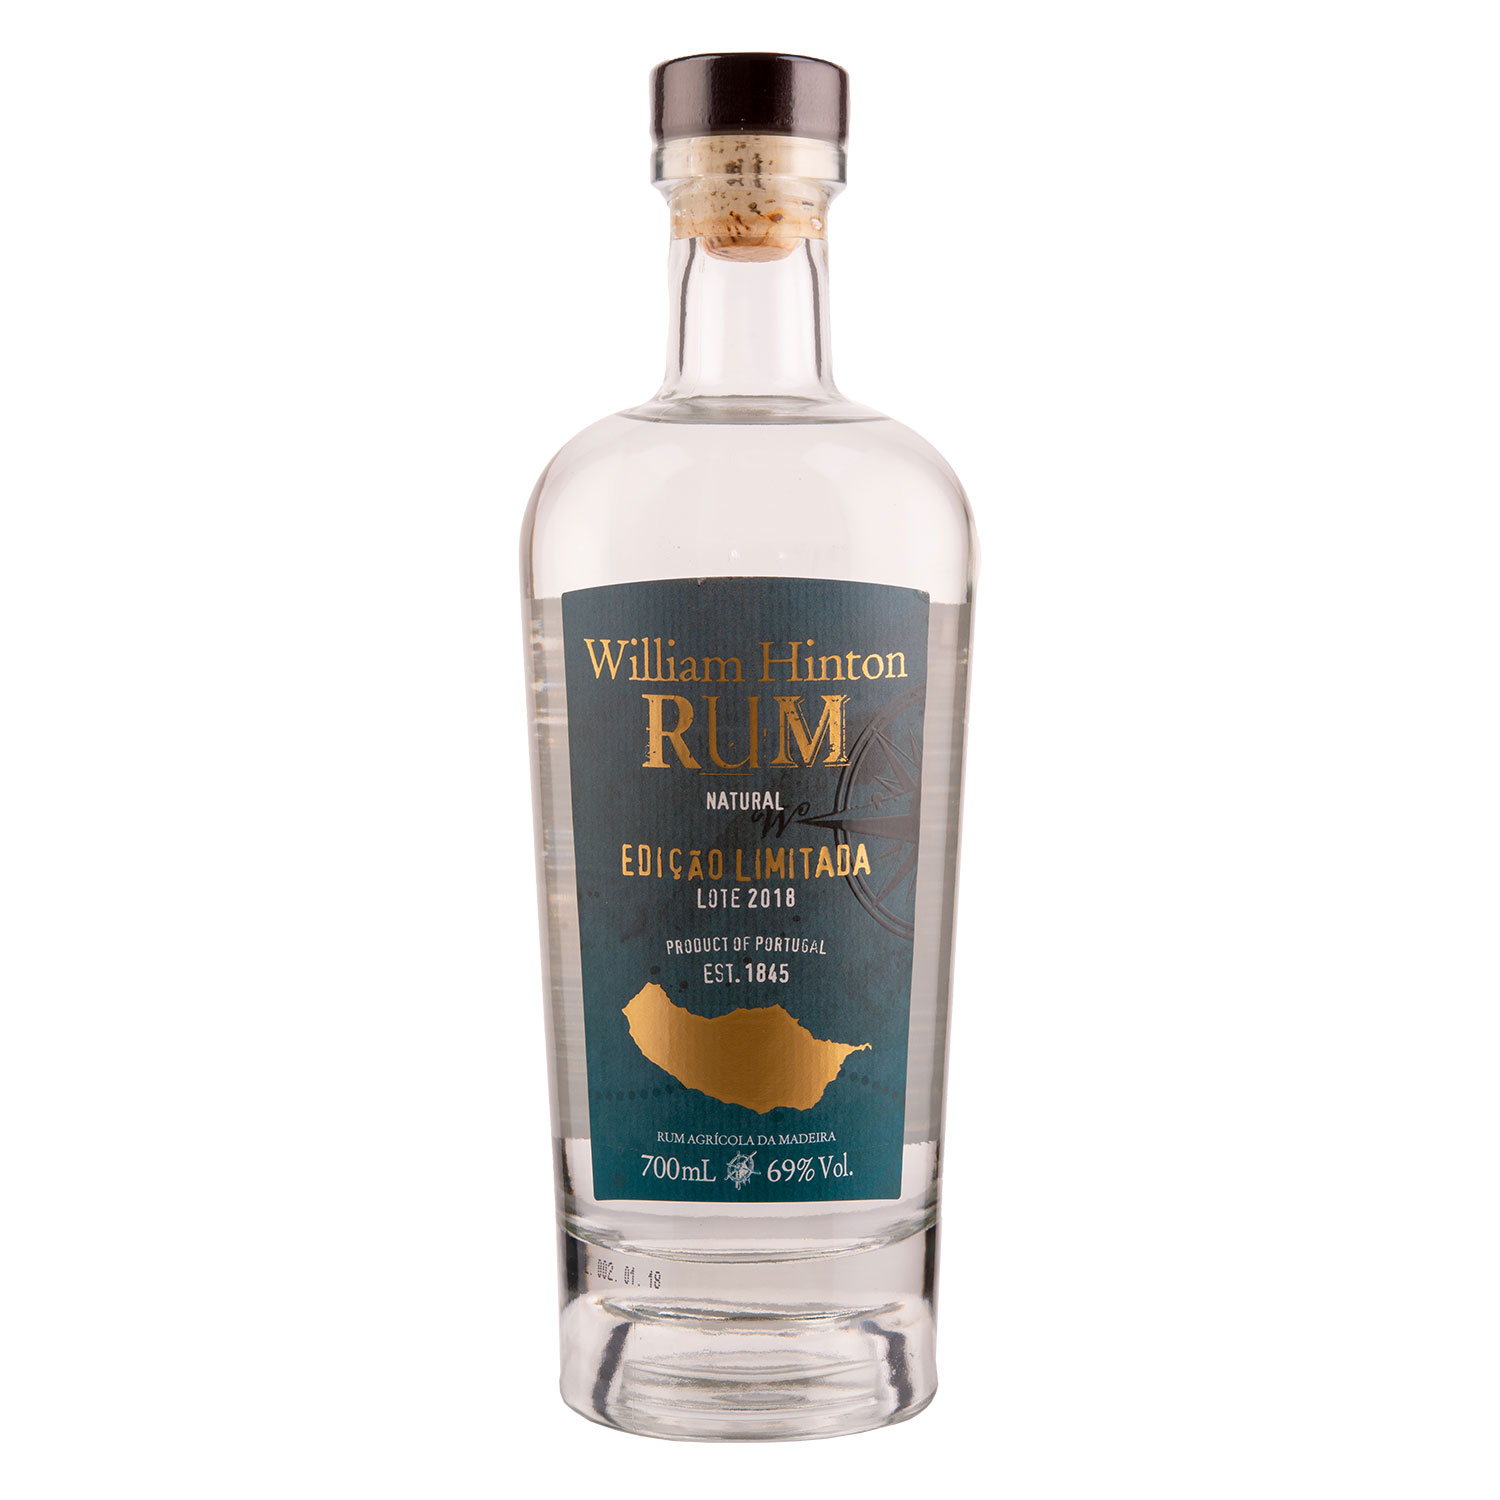 William Hinton Rum - Natural Fermentation